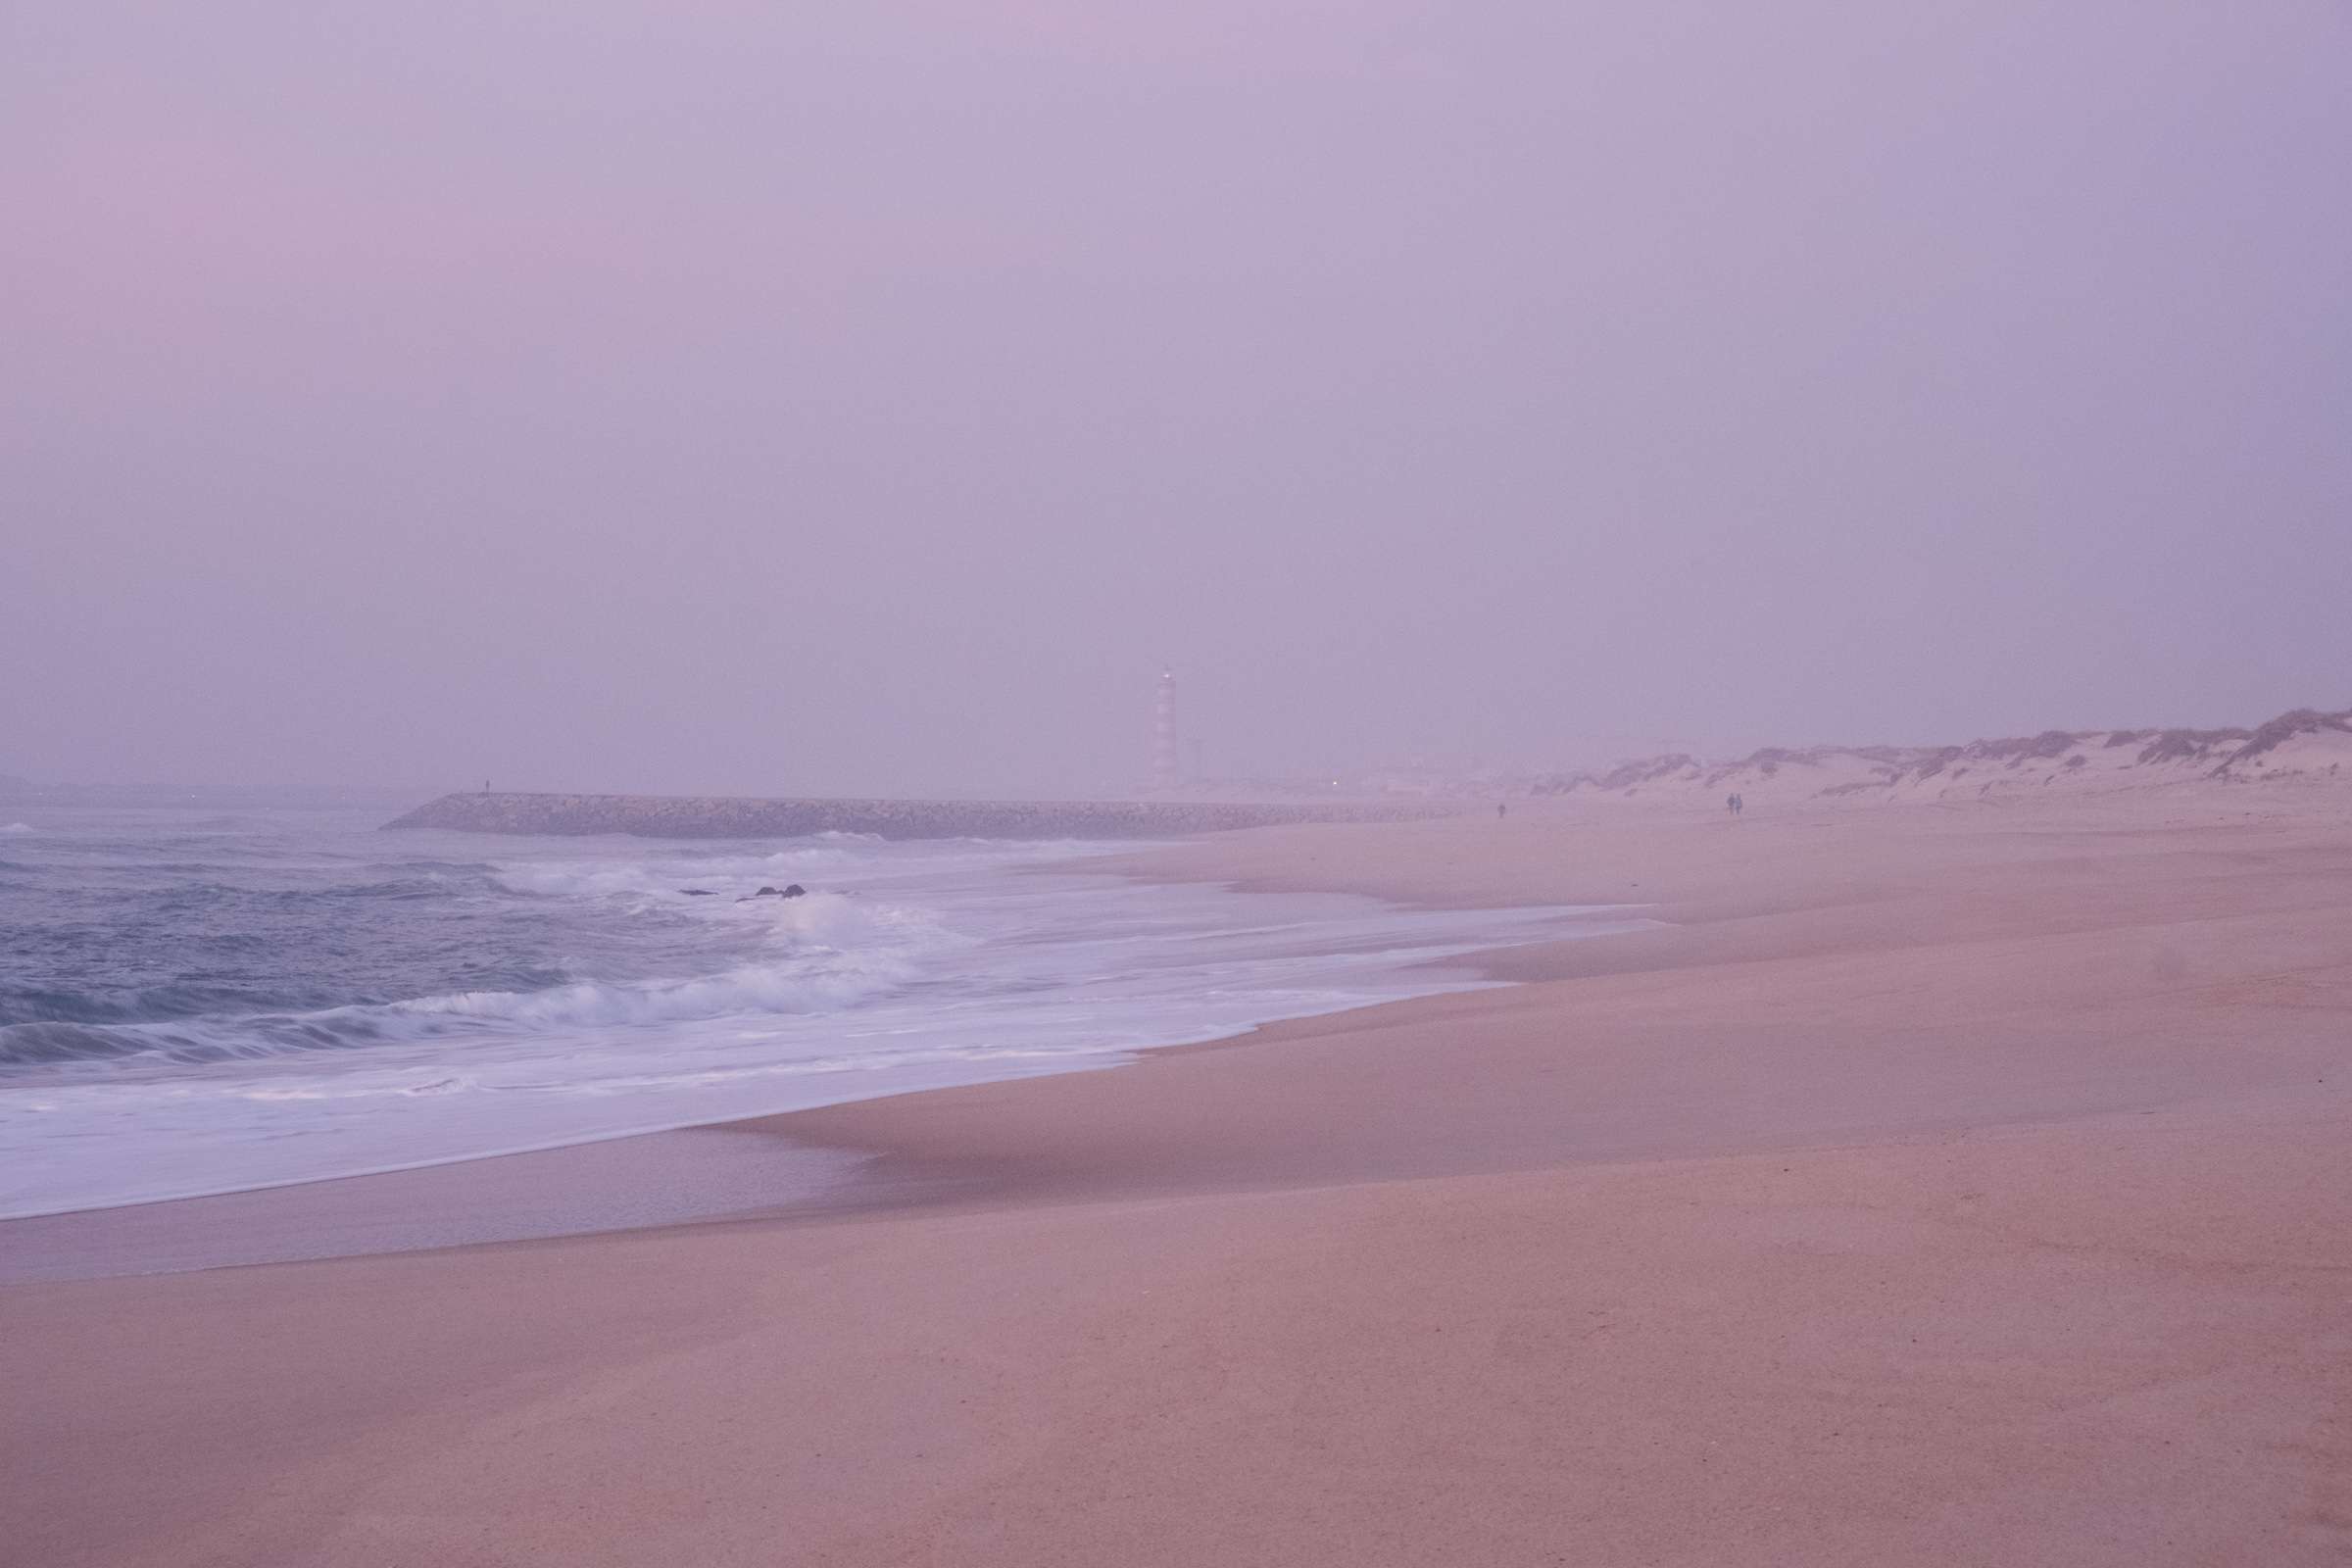 Costa Nova beach with pink mist after sunset